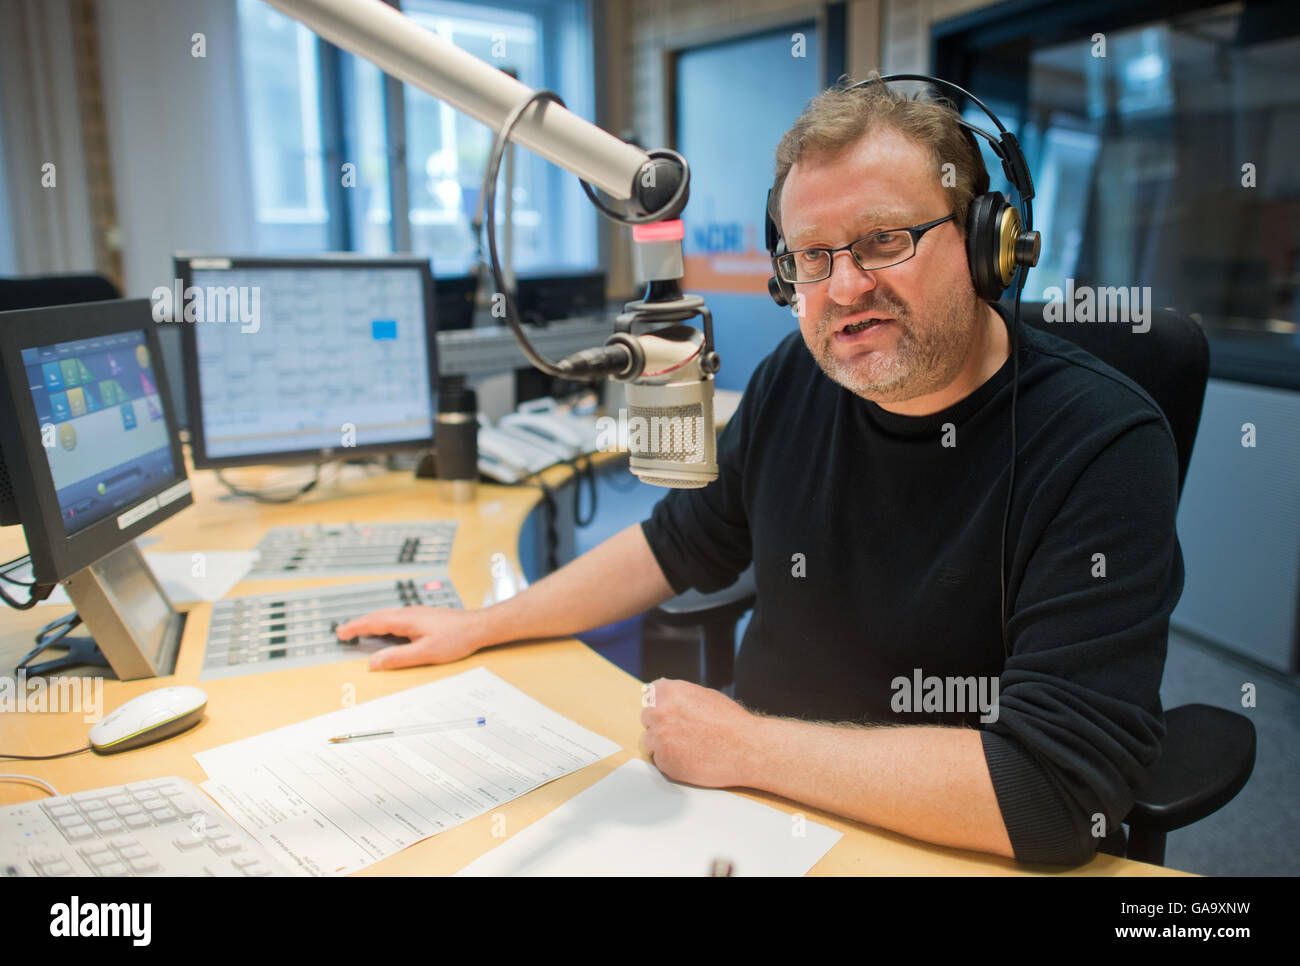 Radio-Host Jens Krause Gastgeber der Show NDR 1 Niedersachsen im Laufe des  Vormittags beim staatlichen Radiosender von der nördlichen Rundfunk (NDR)  in Hannover, Deutschland, 14. Juli 2016. Laut Media-Analyse ist NDR 1